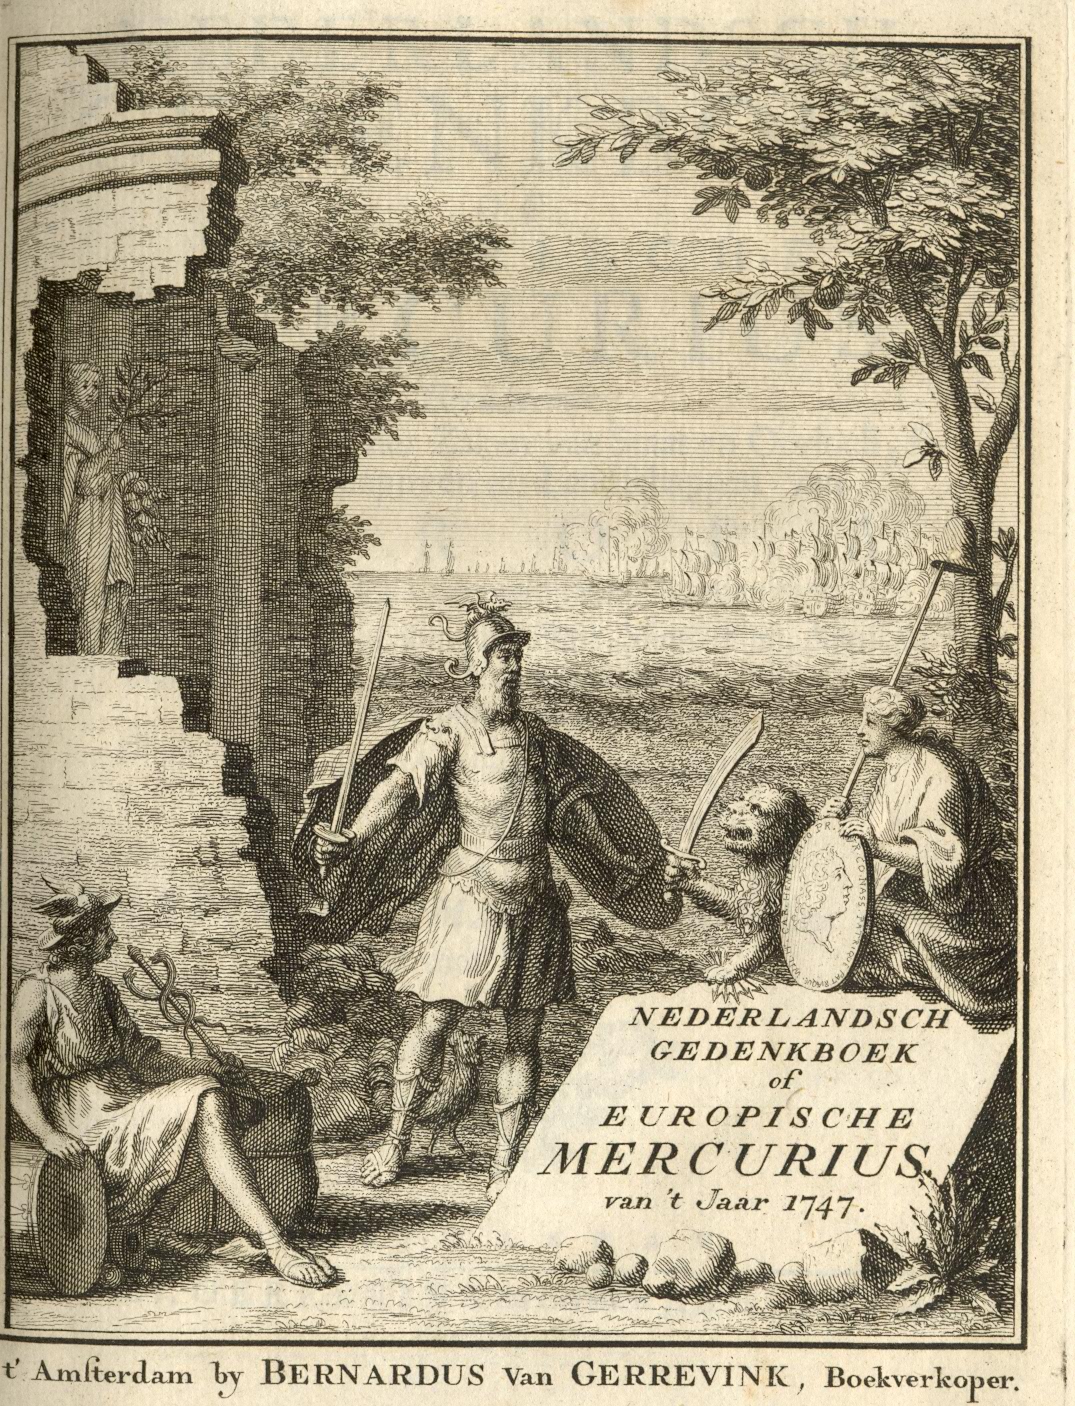 Europische Mercurius, 1747.